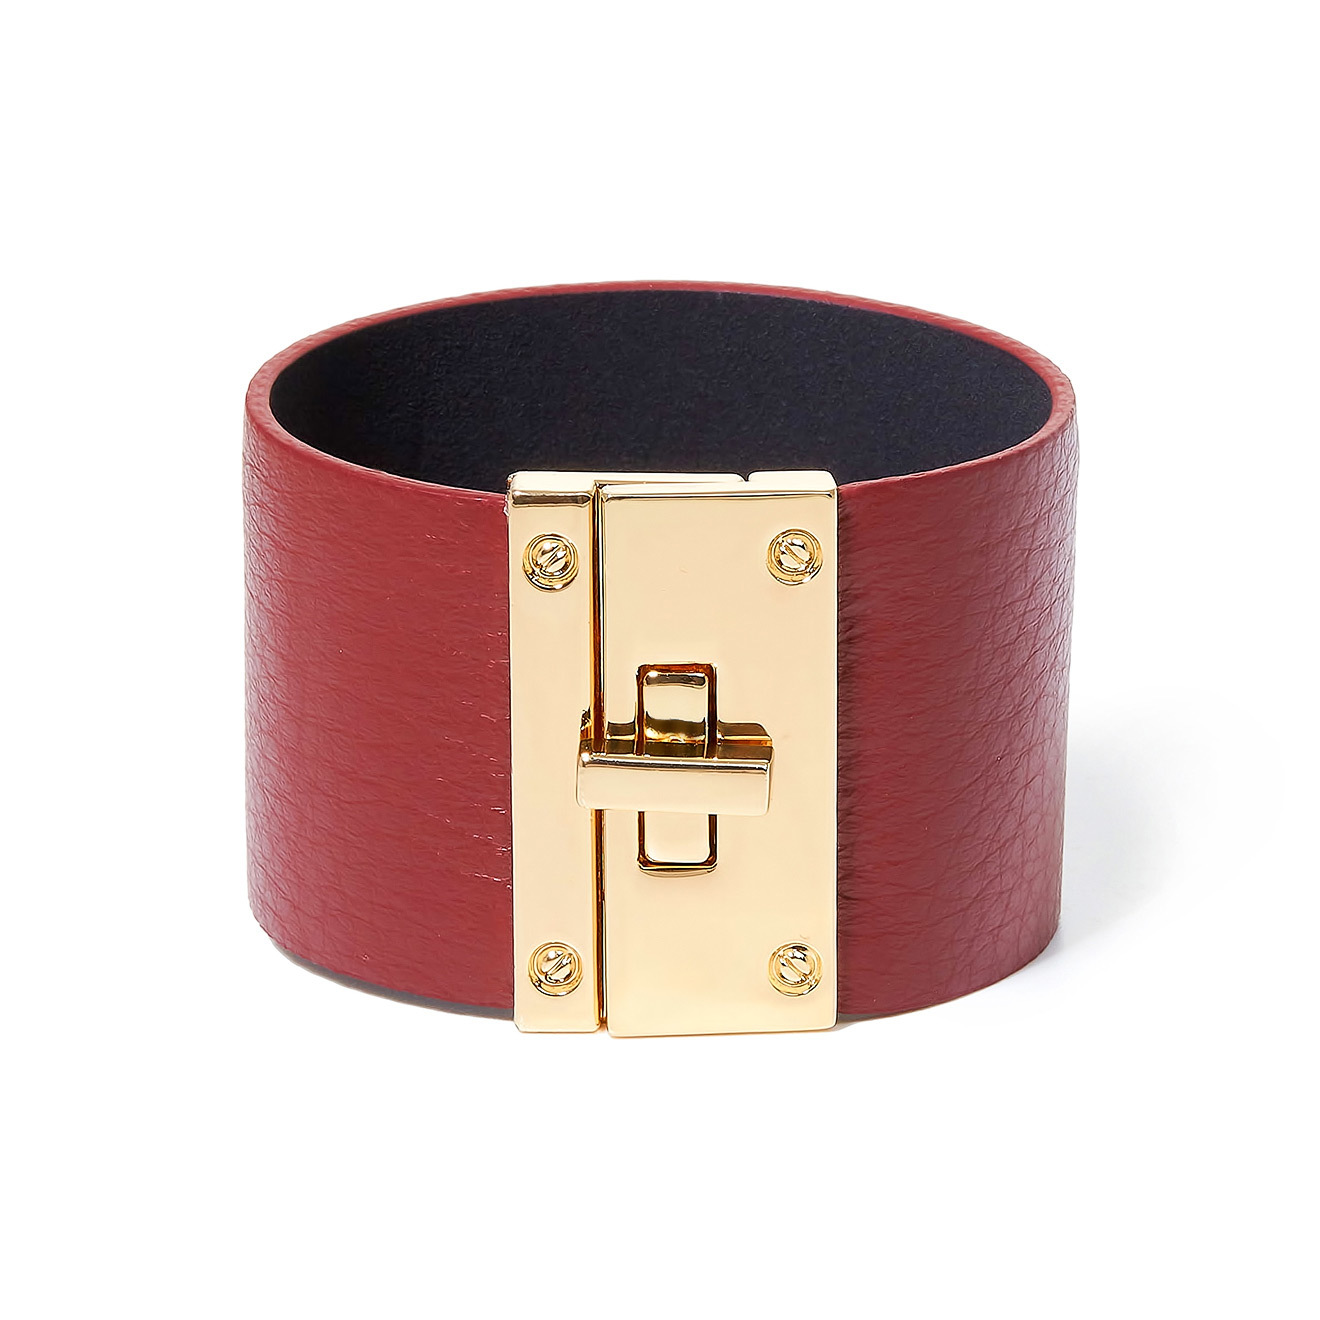 Tannum Бордовый кожаный браслет с металлическим замком tannum болотный кожаный браслет с золотистым замком